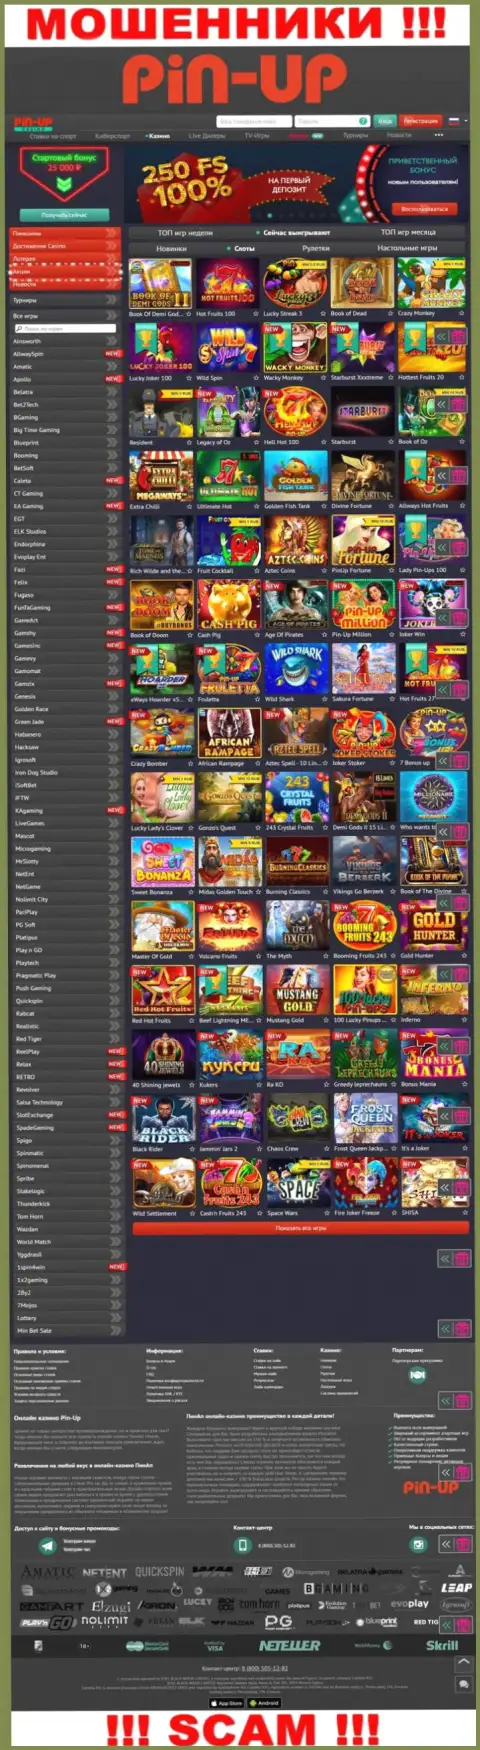 Пин-Ап Казино - это официальный сайт internet аферистов Pin Up Casino